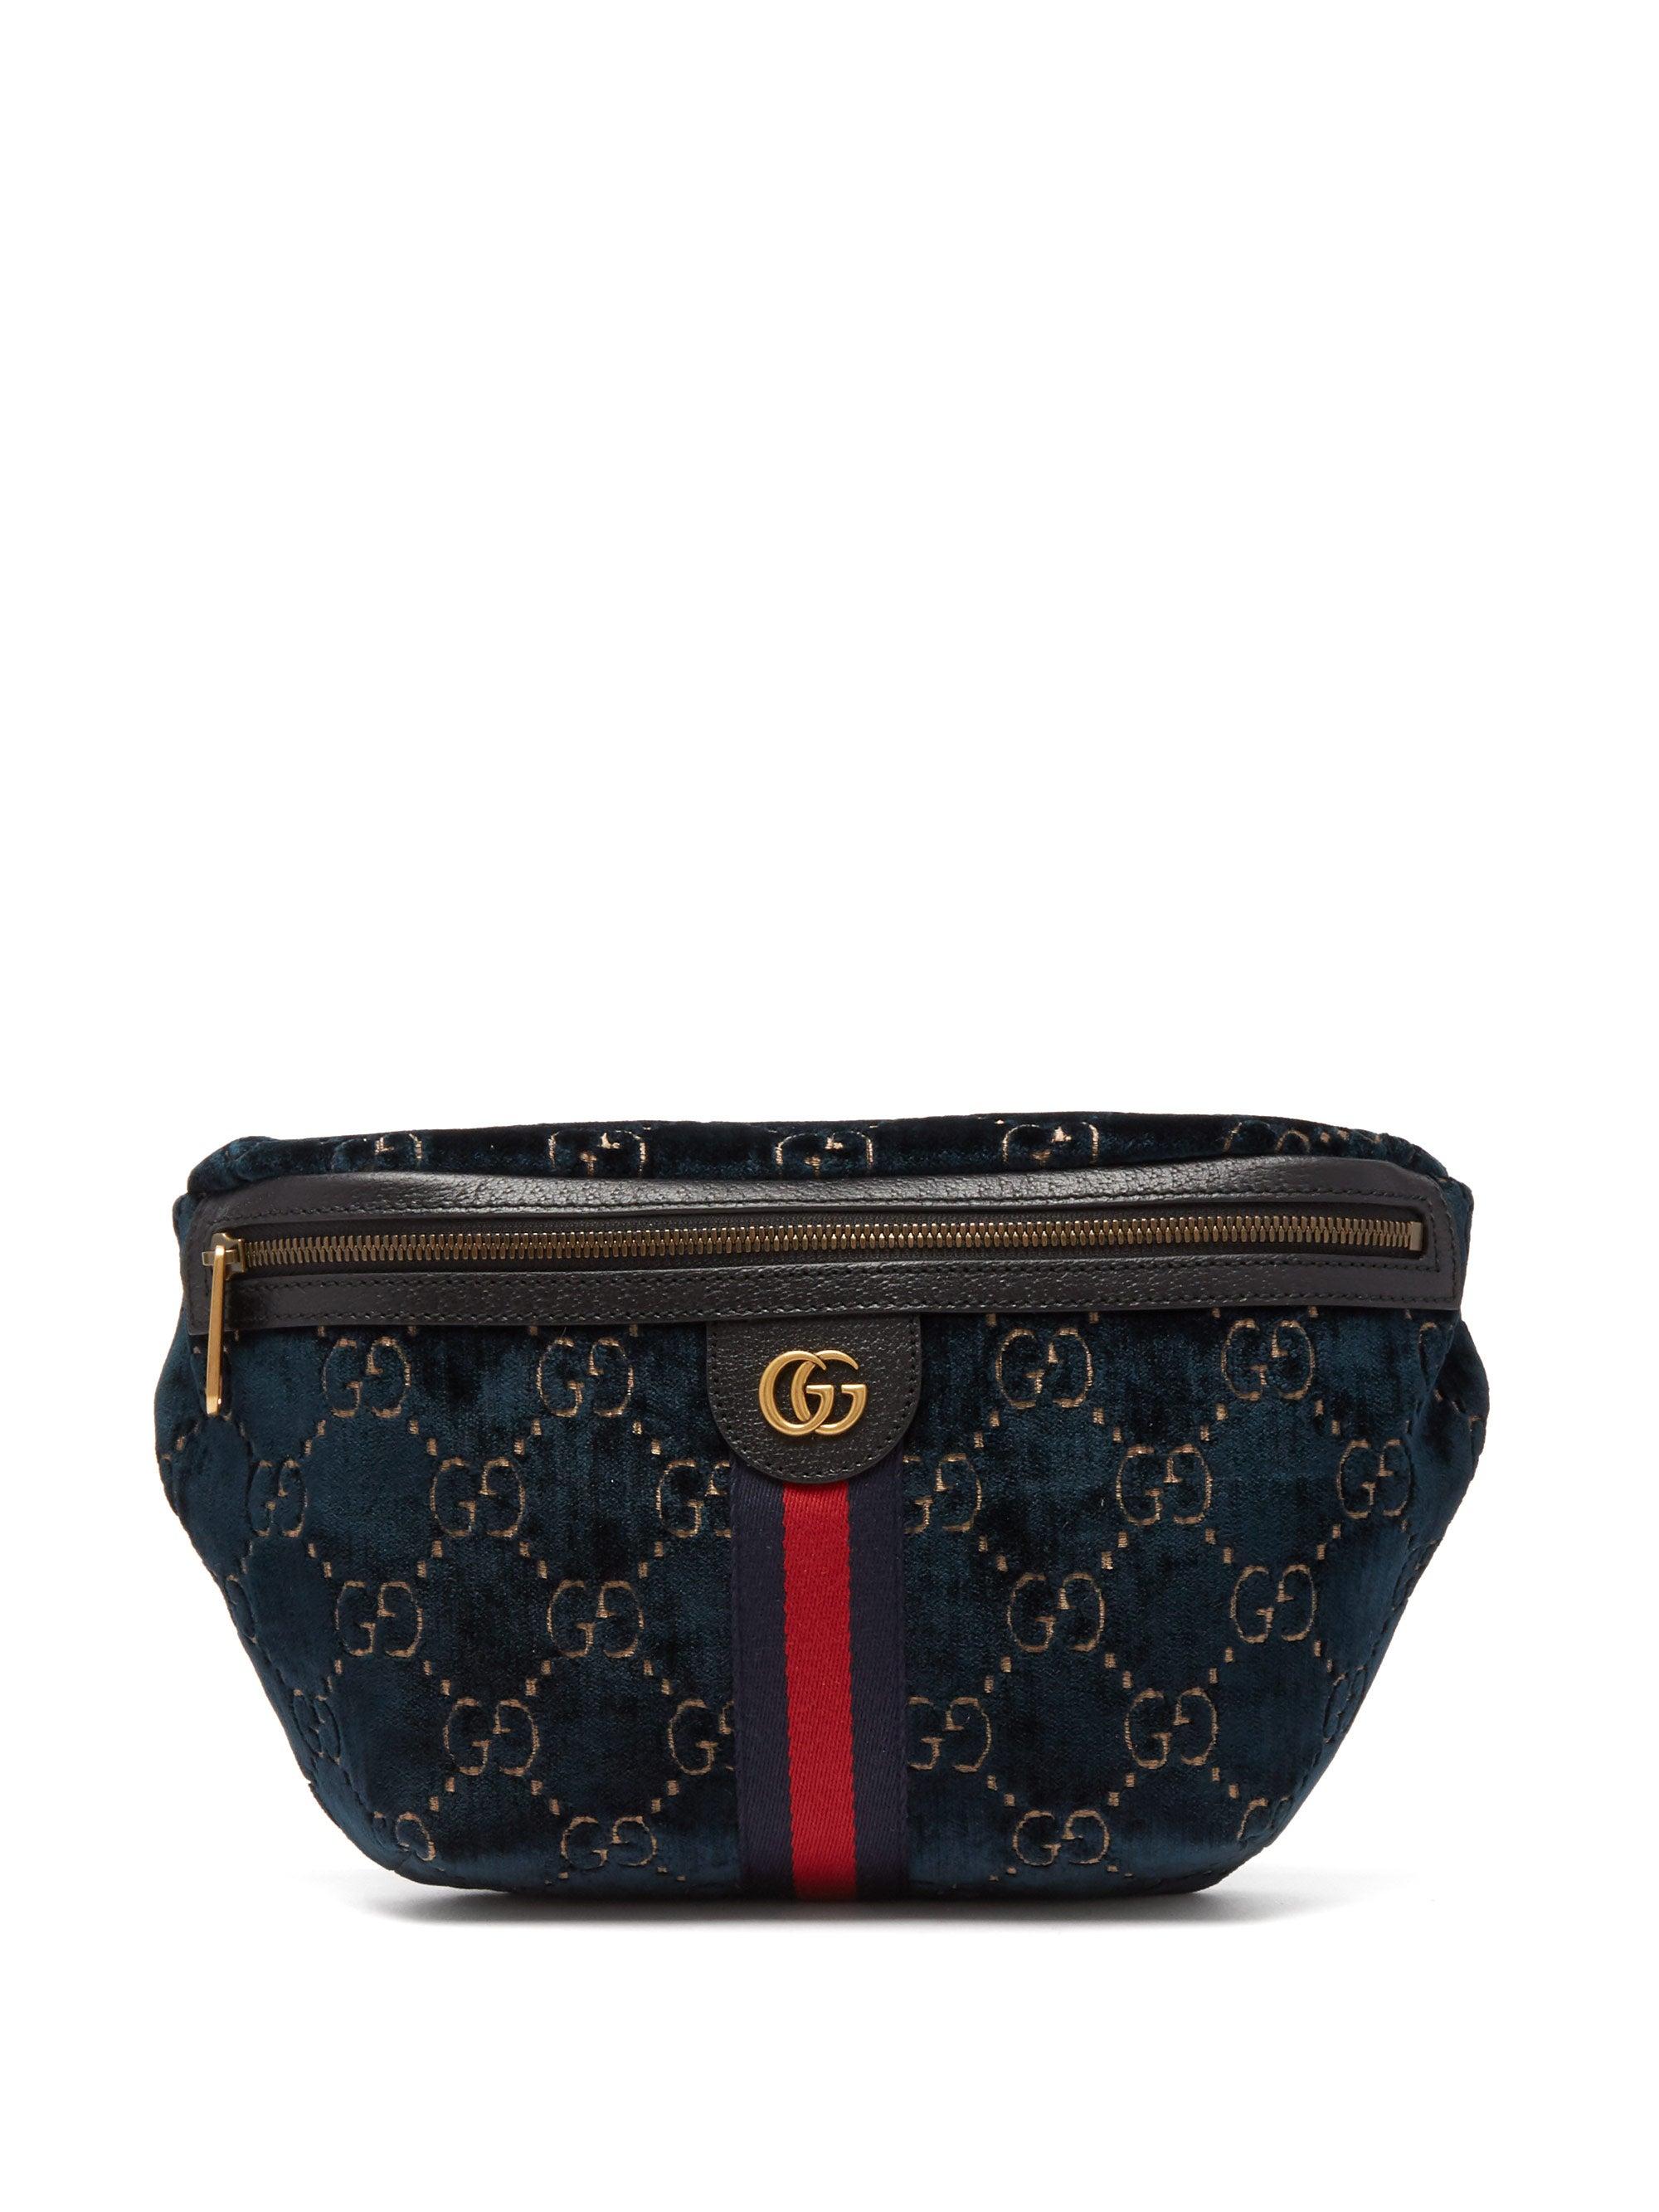 Gucci GG Velvet Belt Bag in Navy (Blue) for Men - Lyst